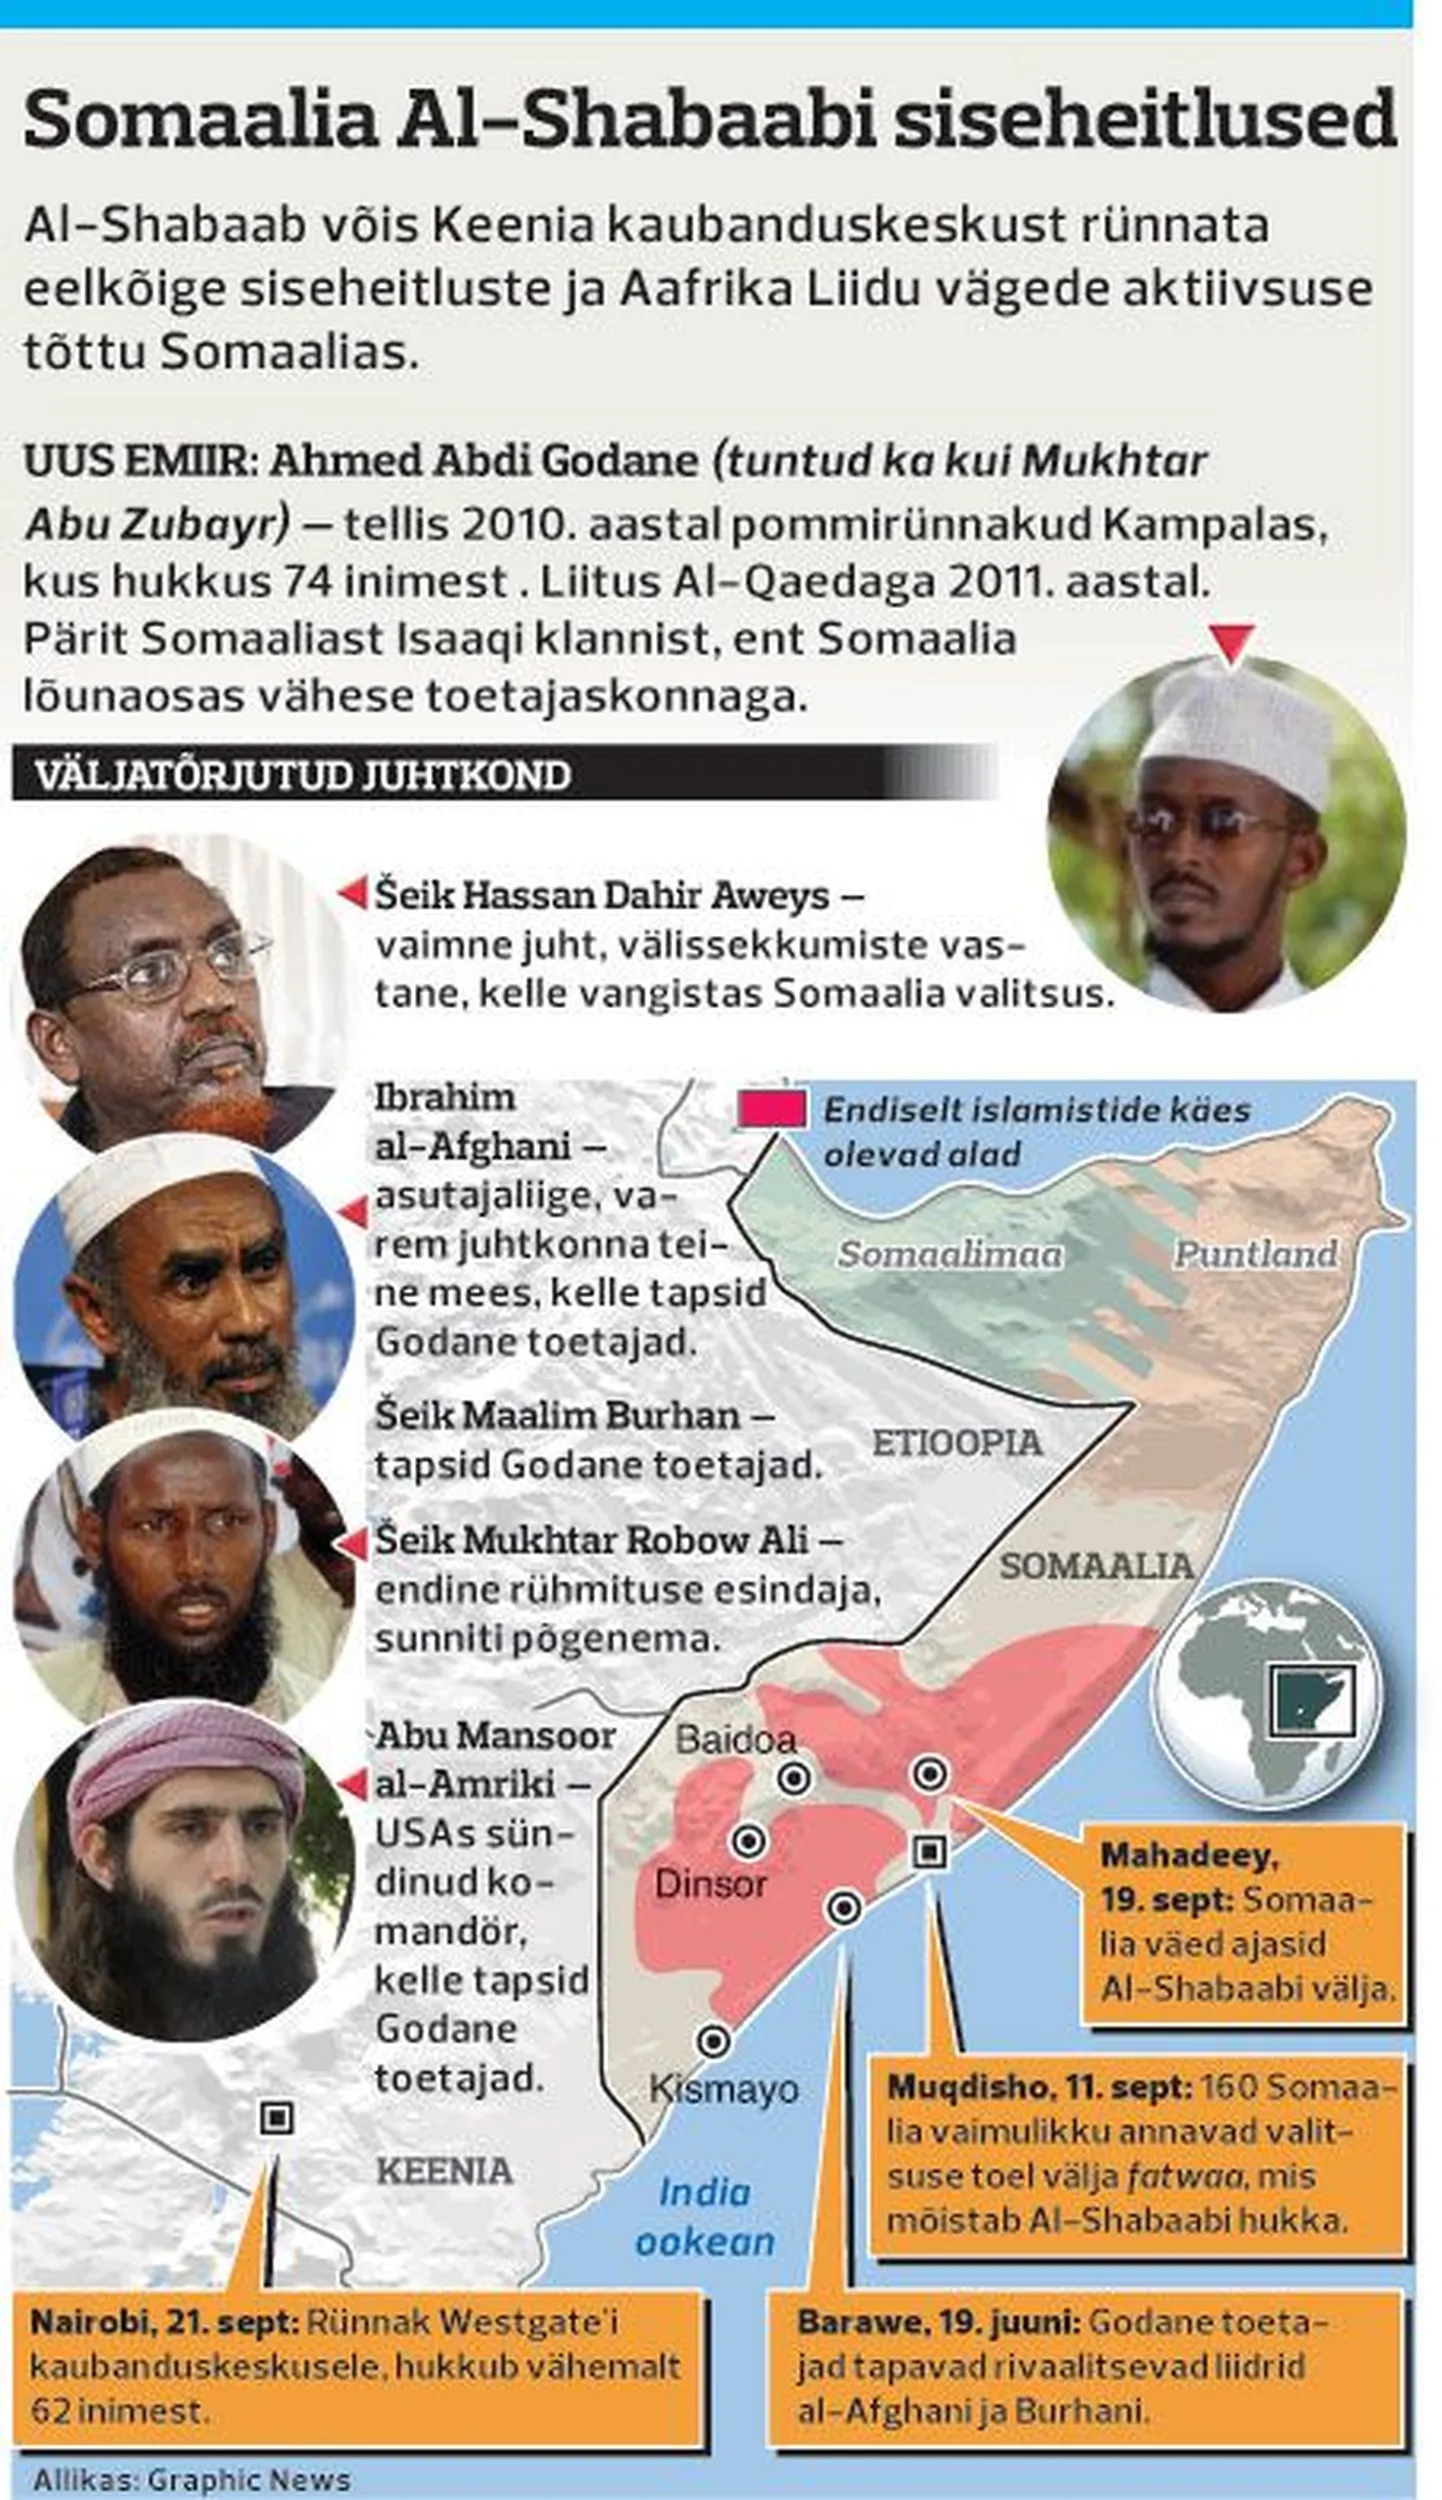 Somaalia Al-Shabaabi siseheitlused.